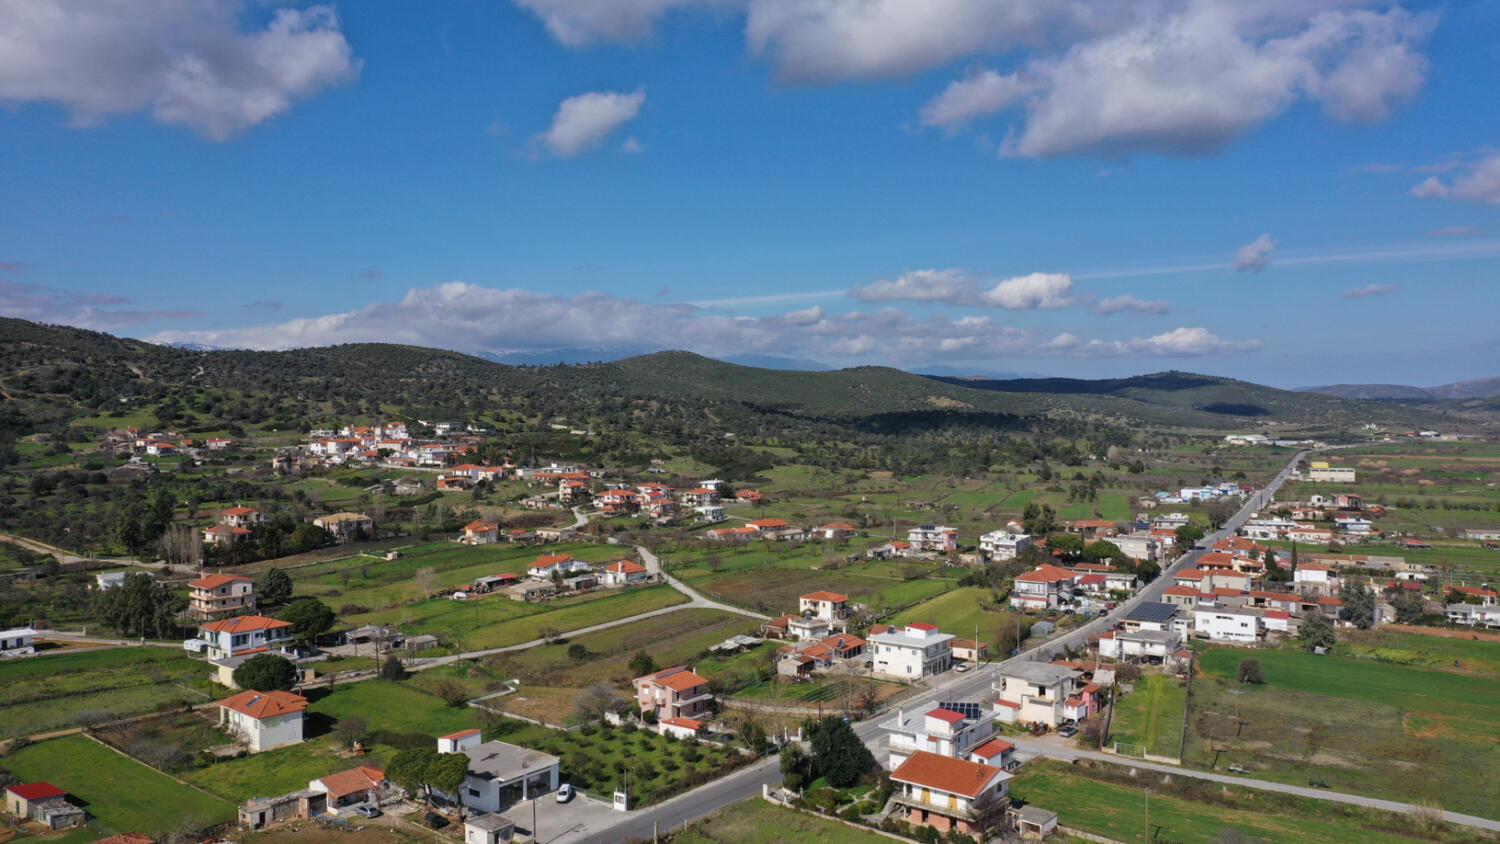 Χωριό Λέπουρα. Φωτογραφία: ©Βασίλης Συκάς, για τον Δήμο Κύμης-Αλιβερίου